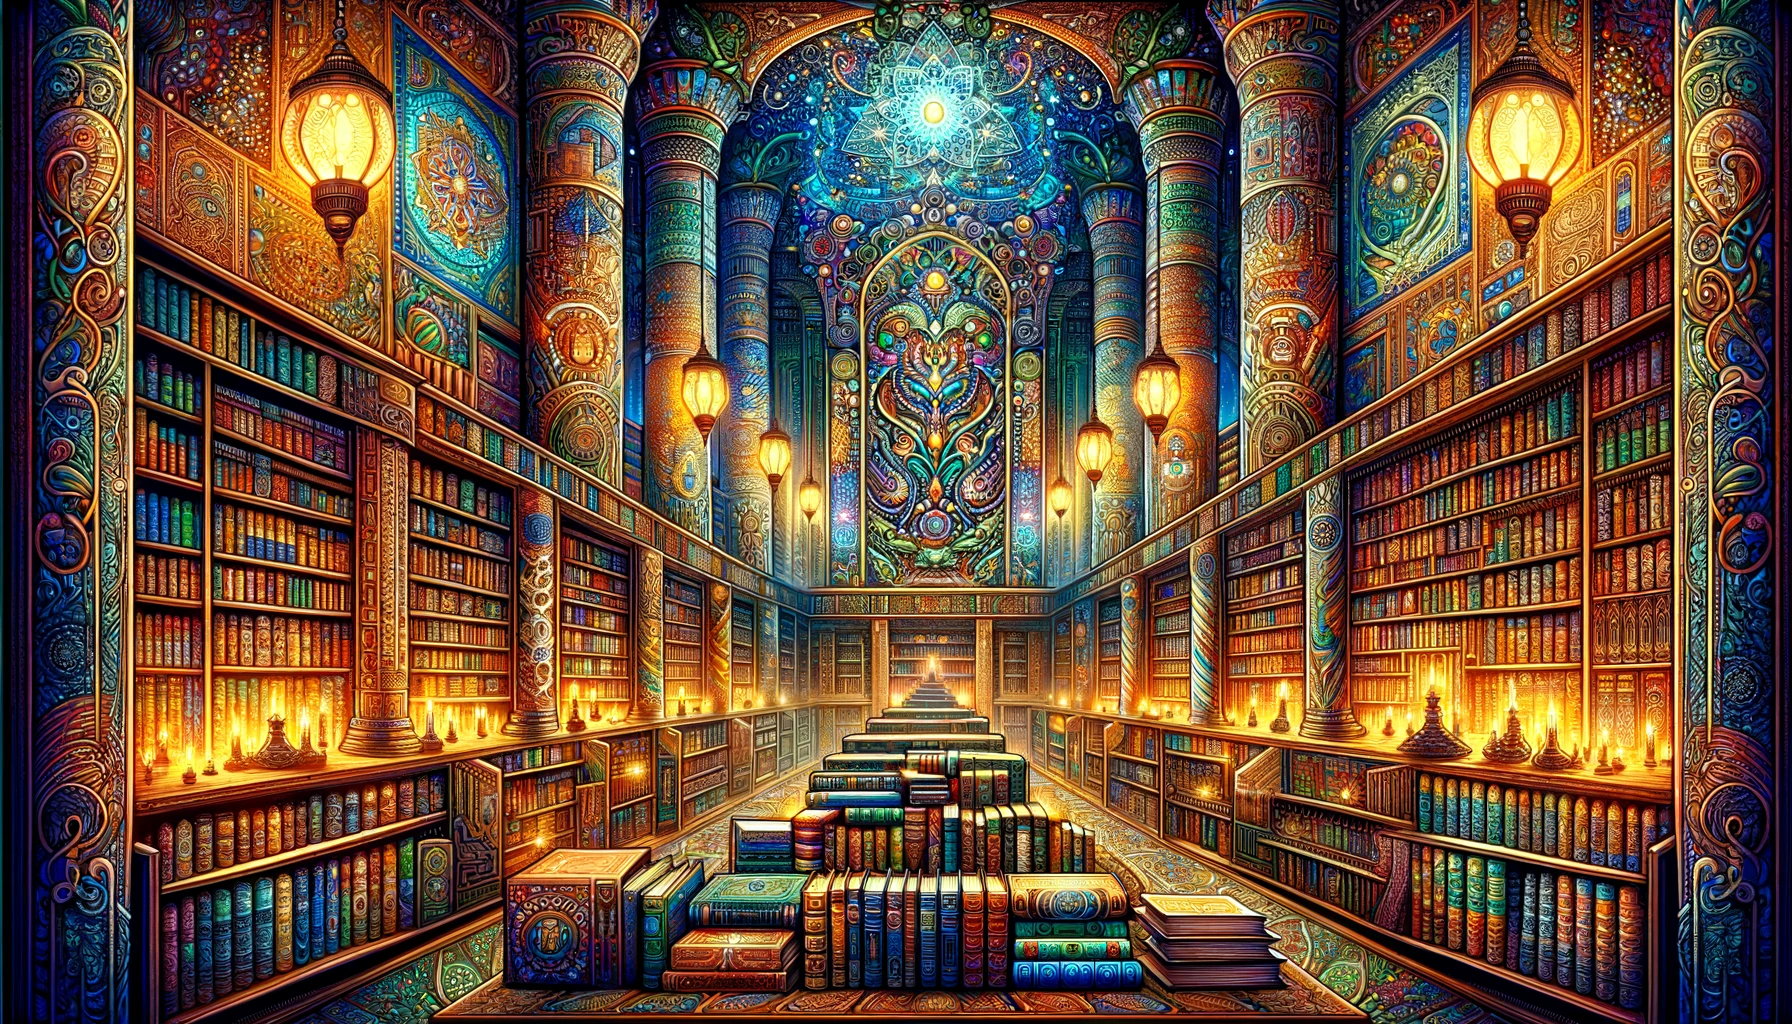 Una ilustración de una antigua biblioteca con libros de diferentes culturas y épocas, representando el conocimiento y la sabiduría compartidos a lo largo de la historia humana.